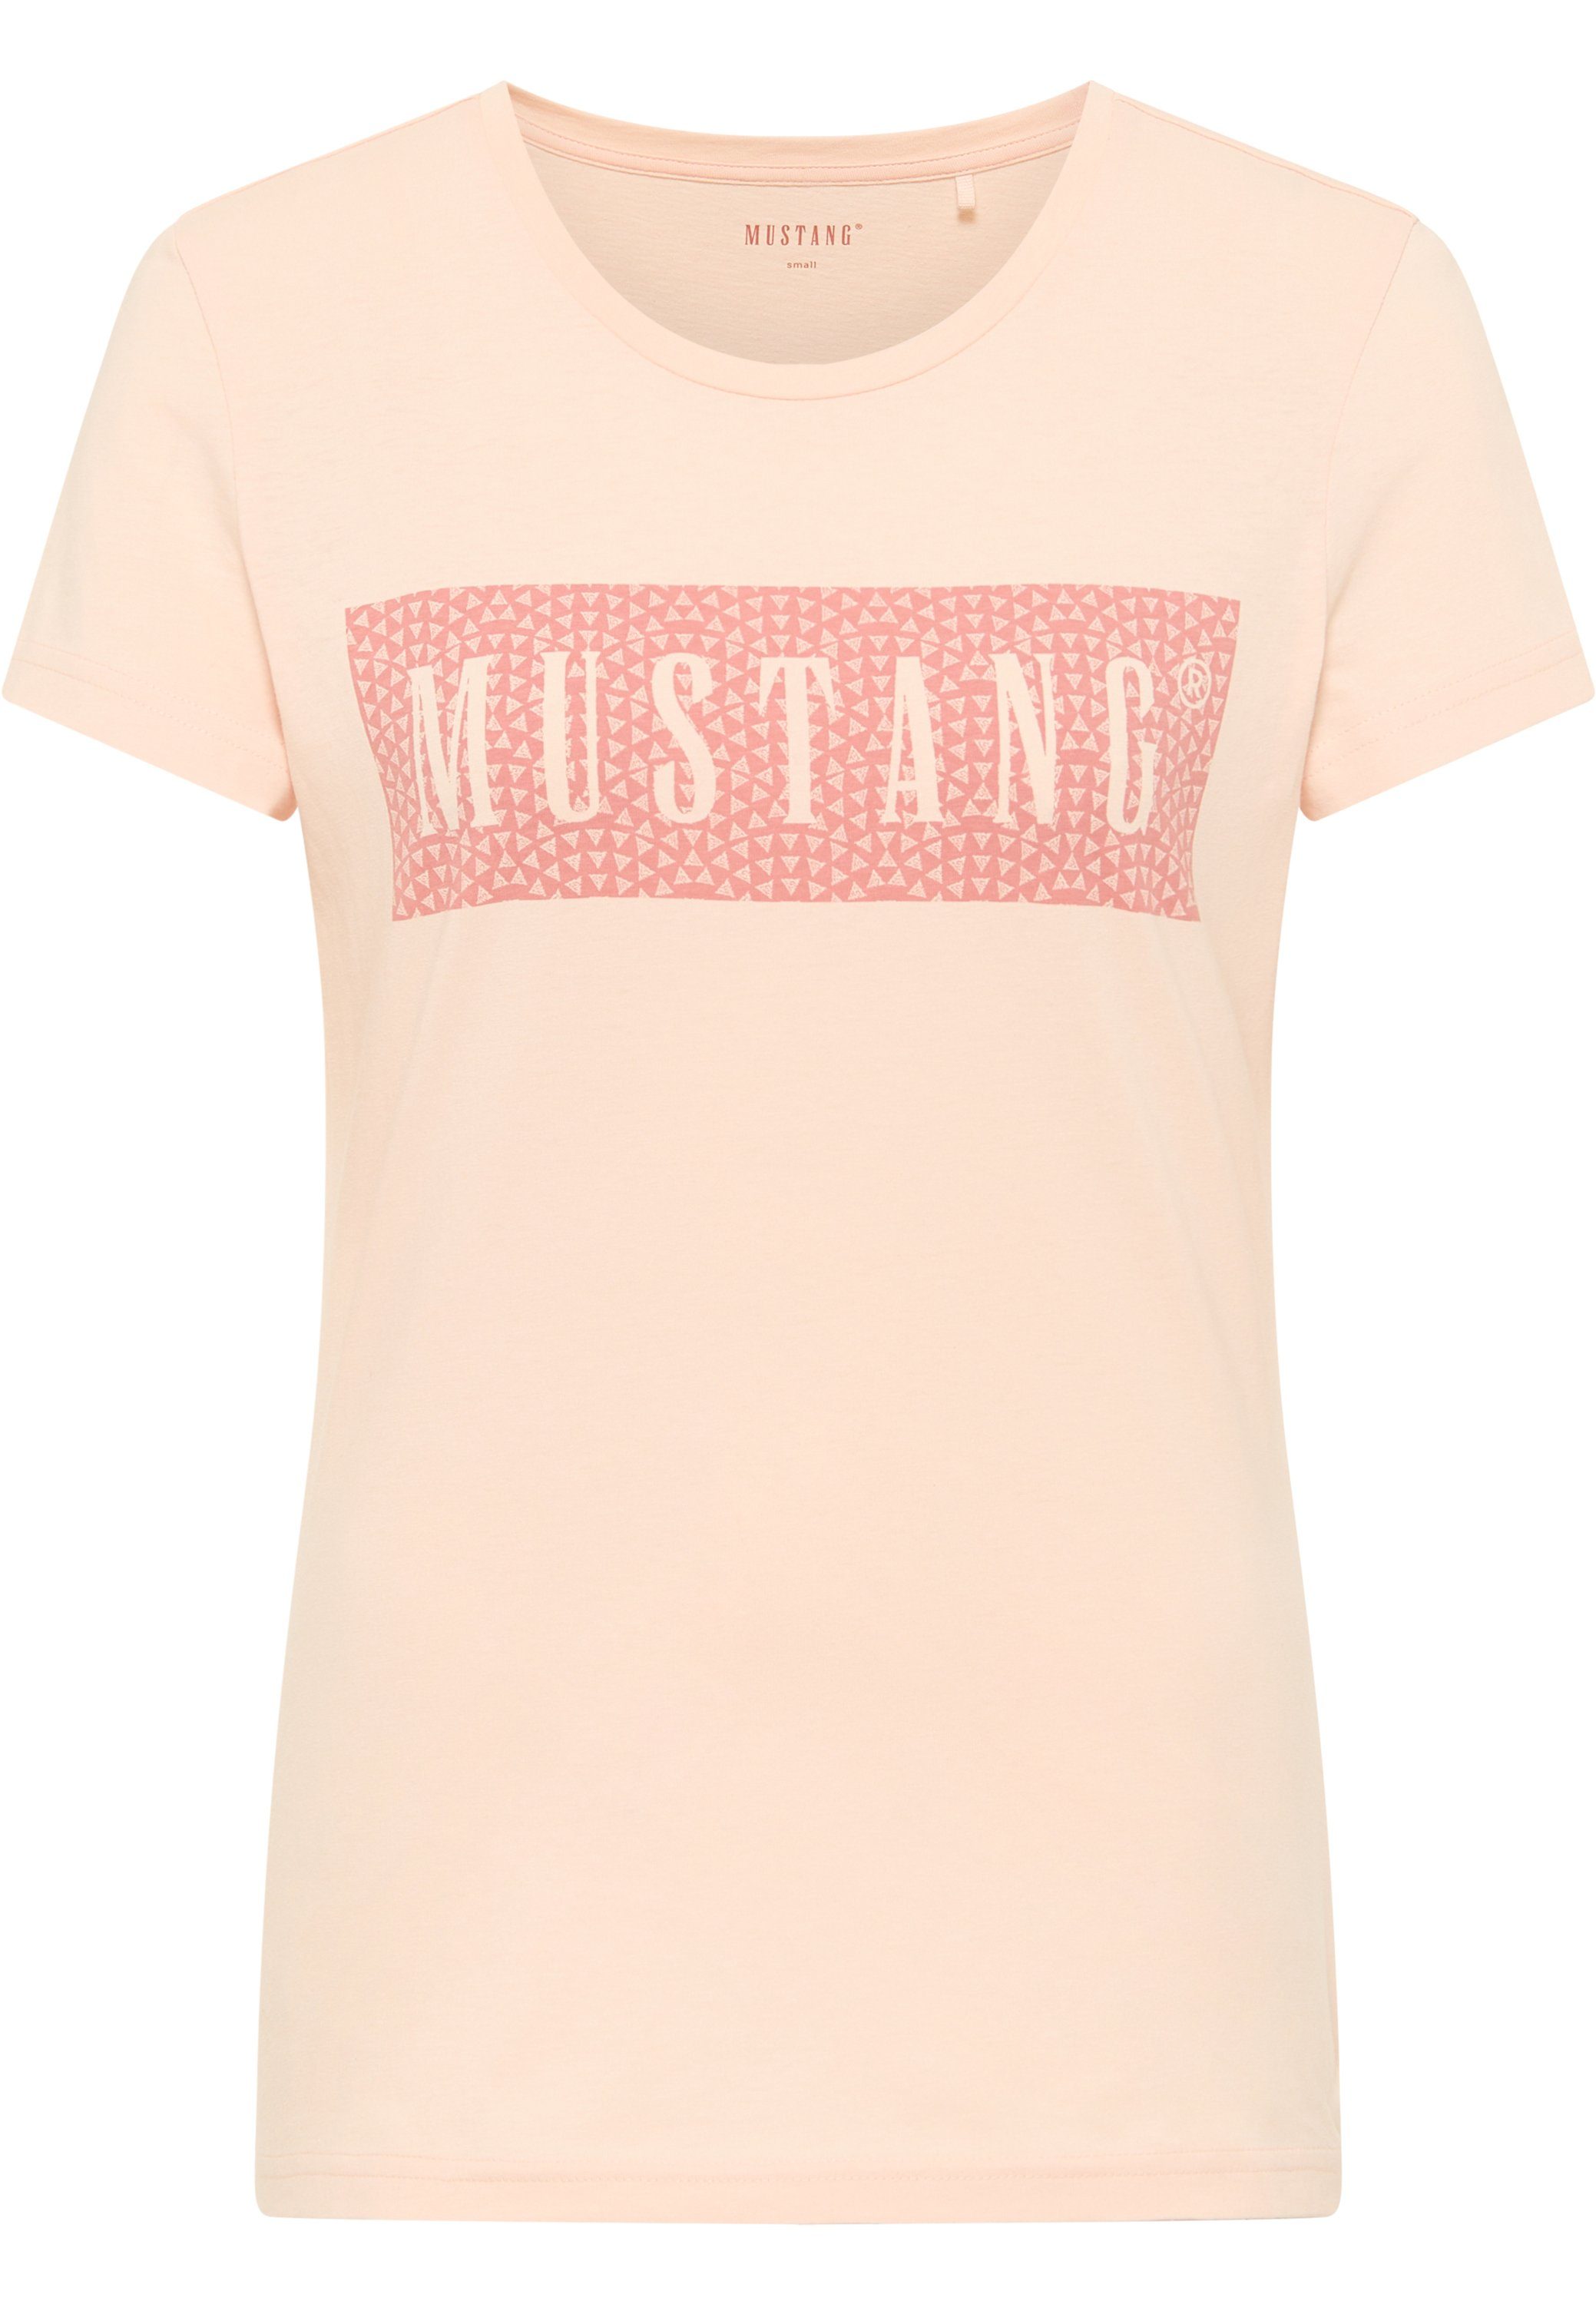 hellrosa MUSTANG Mustang Print-Shirt Kurzarmshirt T-Shirt